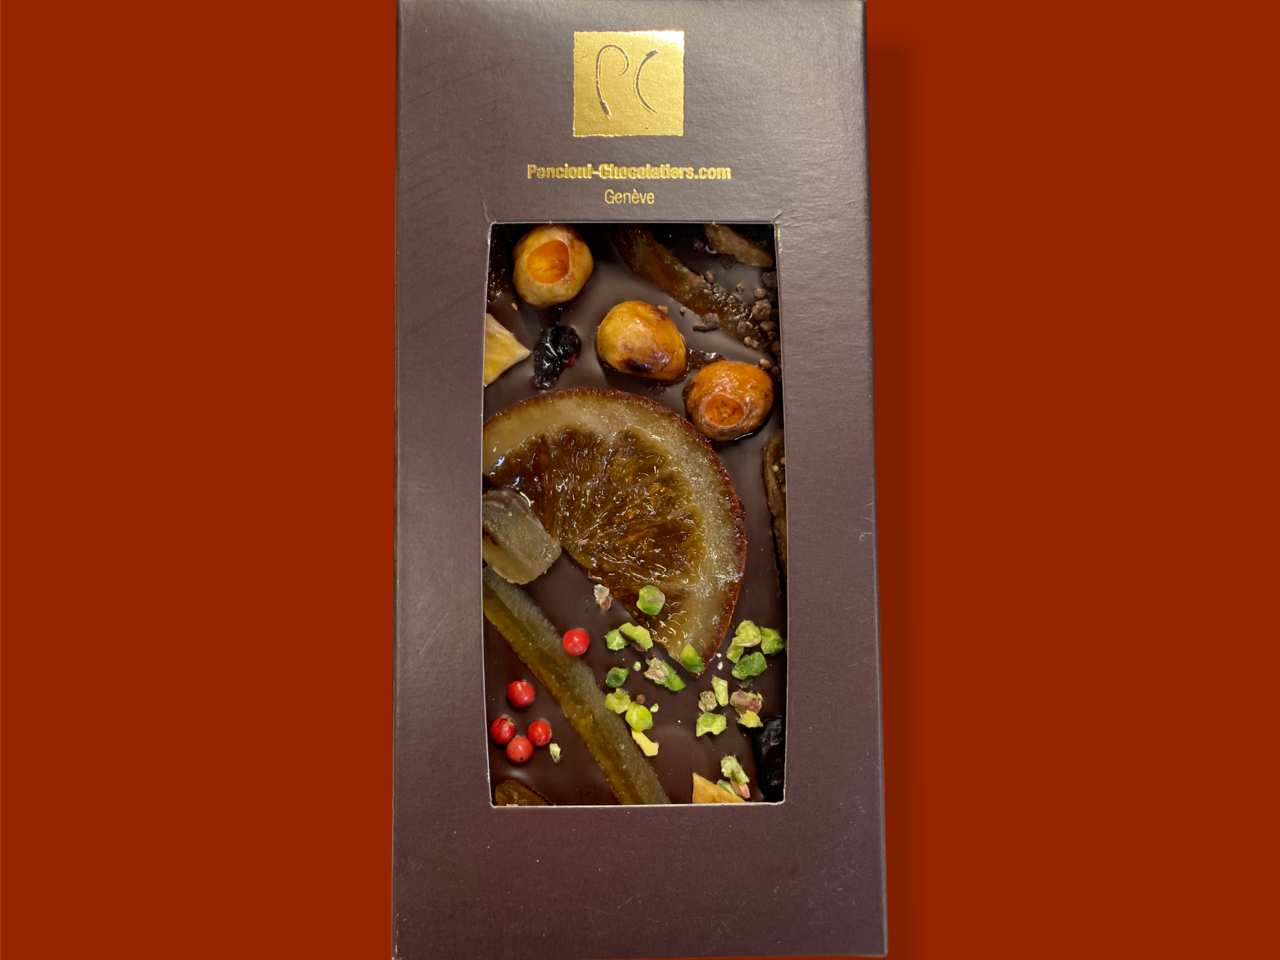 Tablettes fruits secs chocolat noir 100g, produit artisanal en vente directe en Suisse